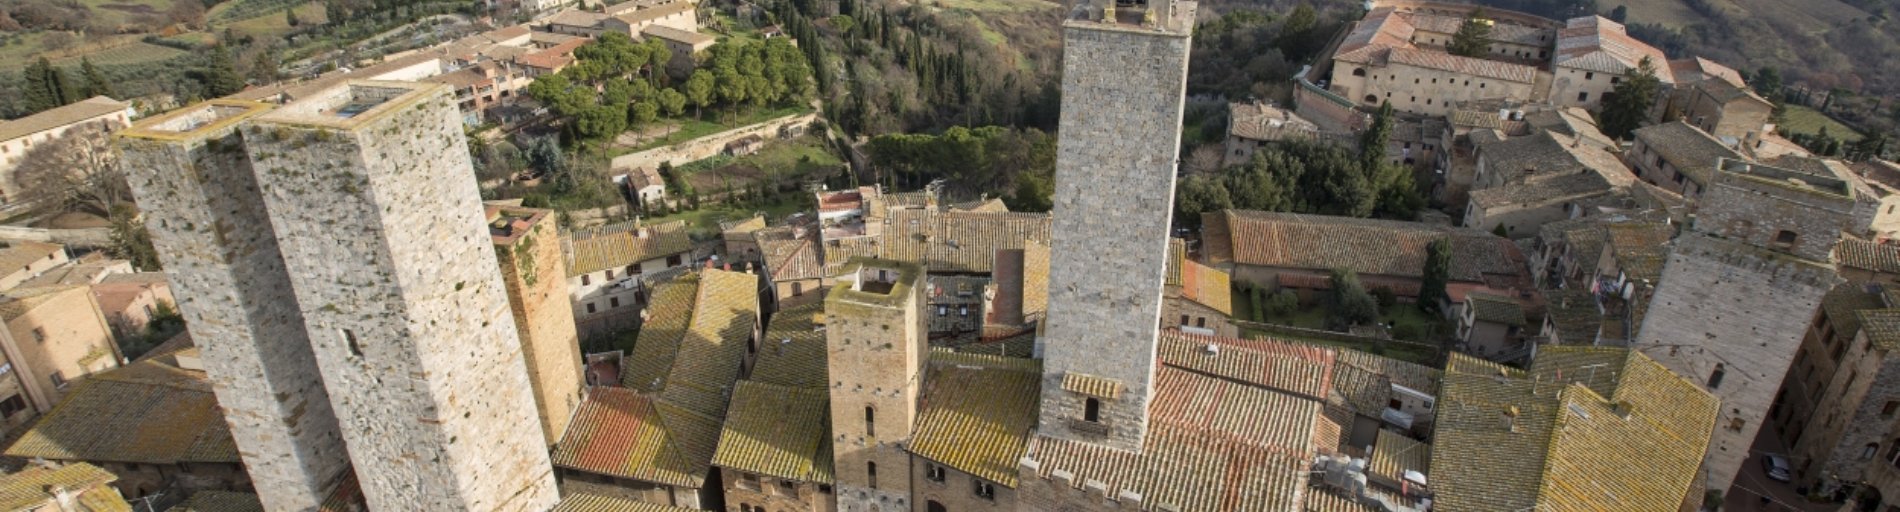 Eine Luftaufnahme von San Gimignano